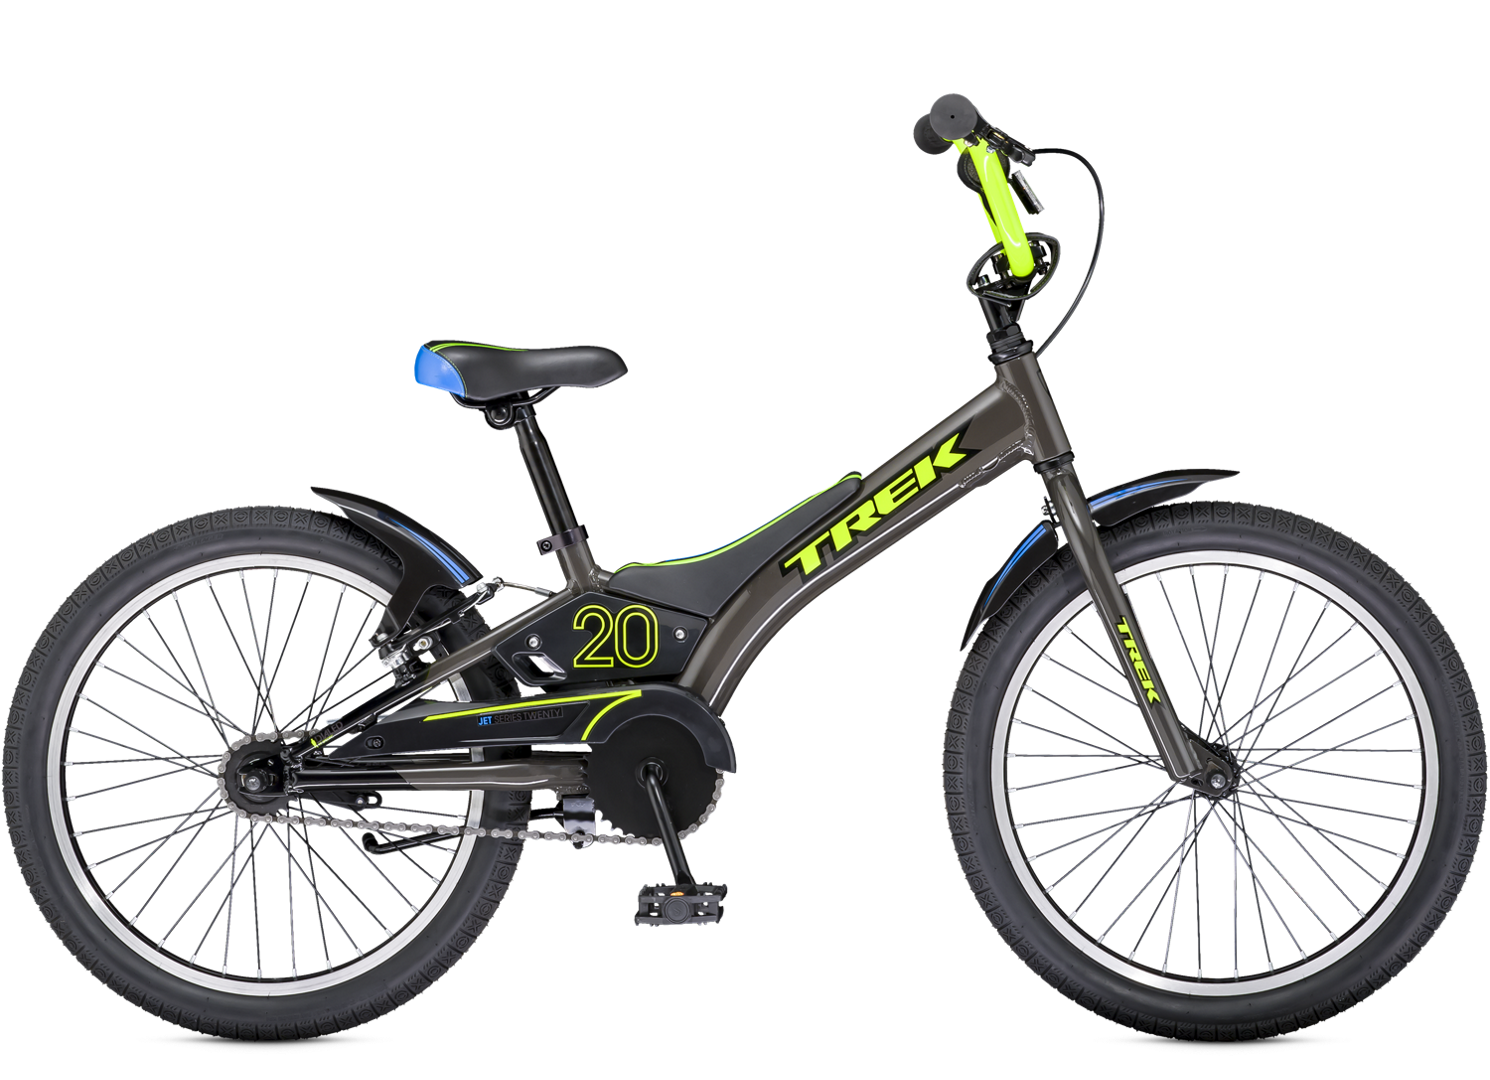 Велосипед для роста 140 см. Велосипед трек Джет 20. Подростковый городской велосипед Trek Jet 20. Trek 20 велосипед 2015. Велосипед Trek Jet 20 вес.